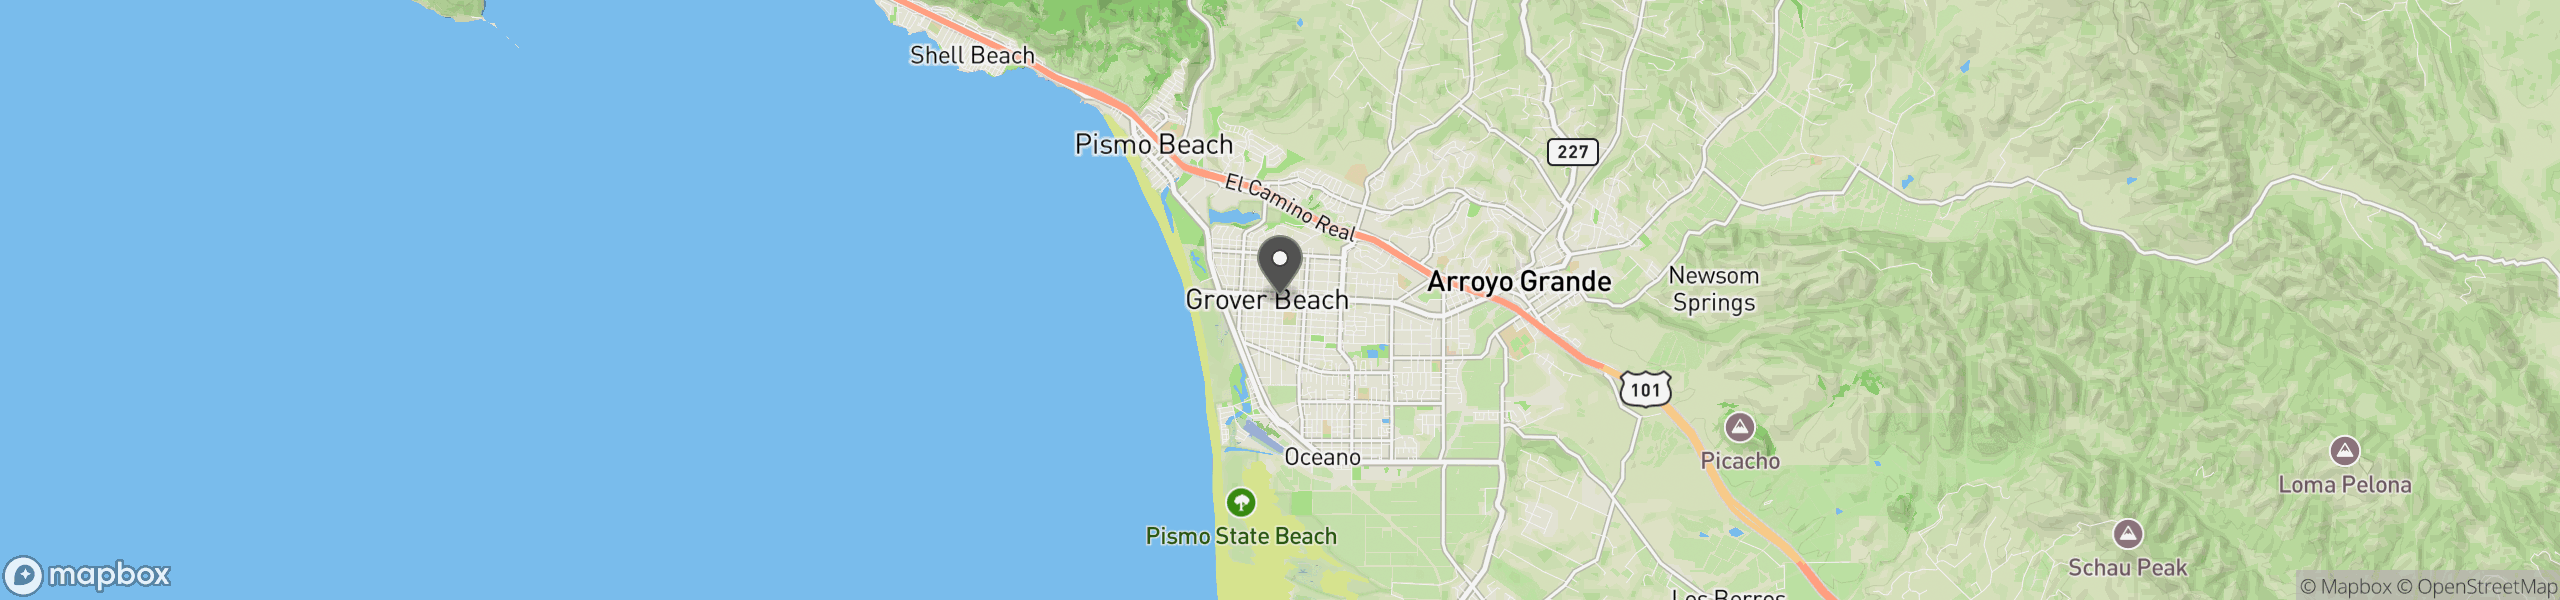 Grover Beach, CA 93433